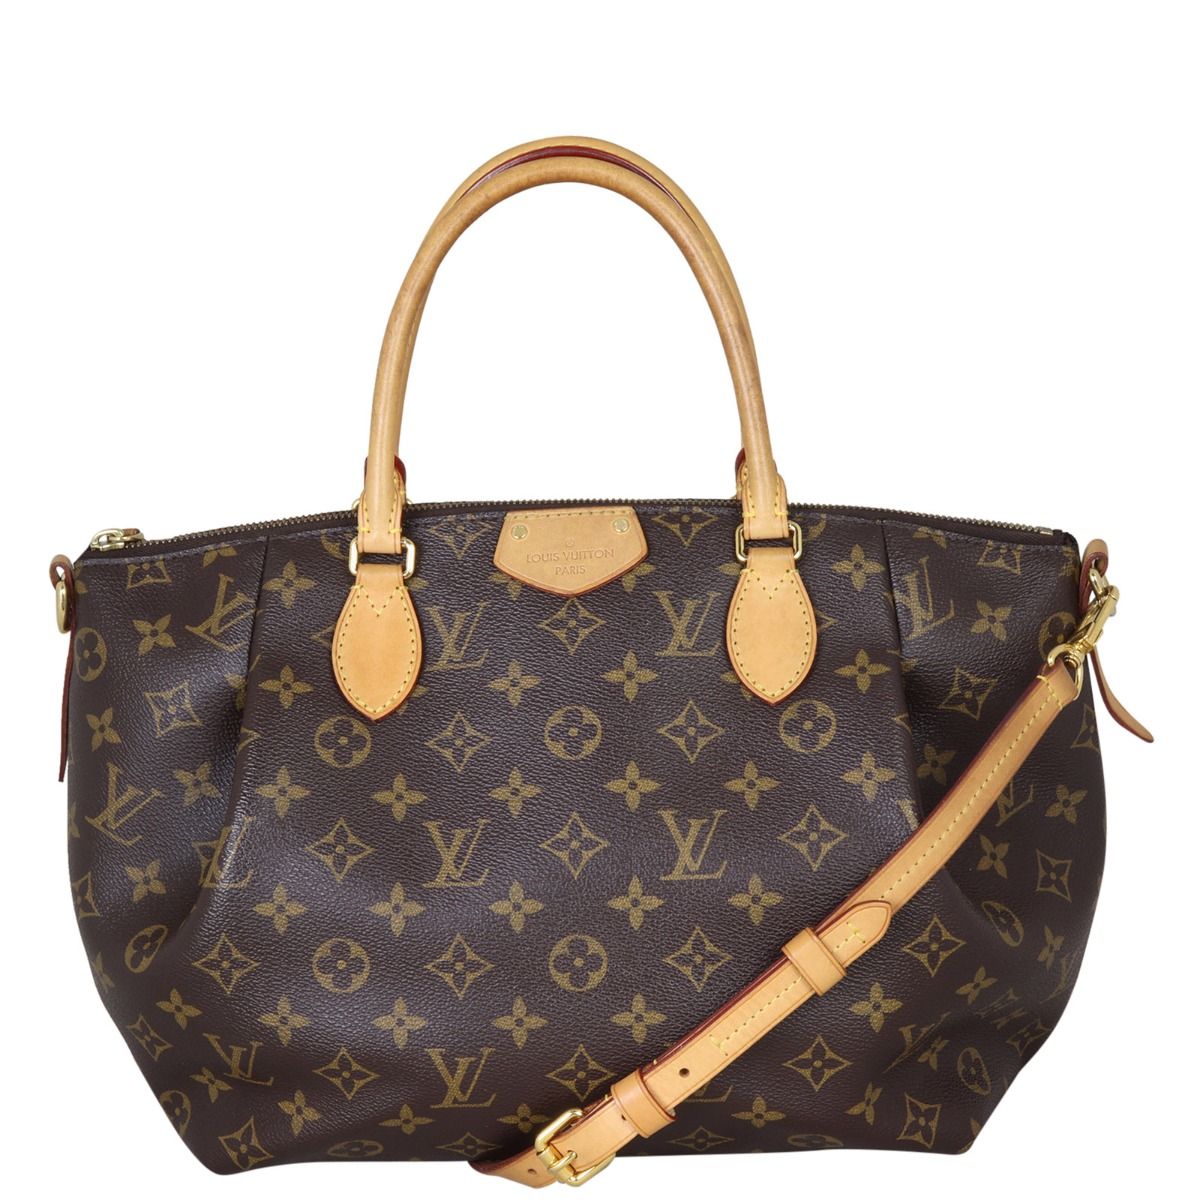 Authentic Louis Vuitton Turenne MM Monogram Canvas Shoulder Bag EXCELLENT   eBay